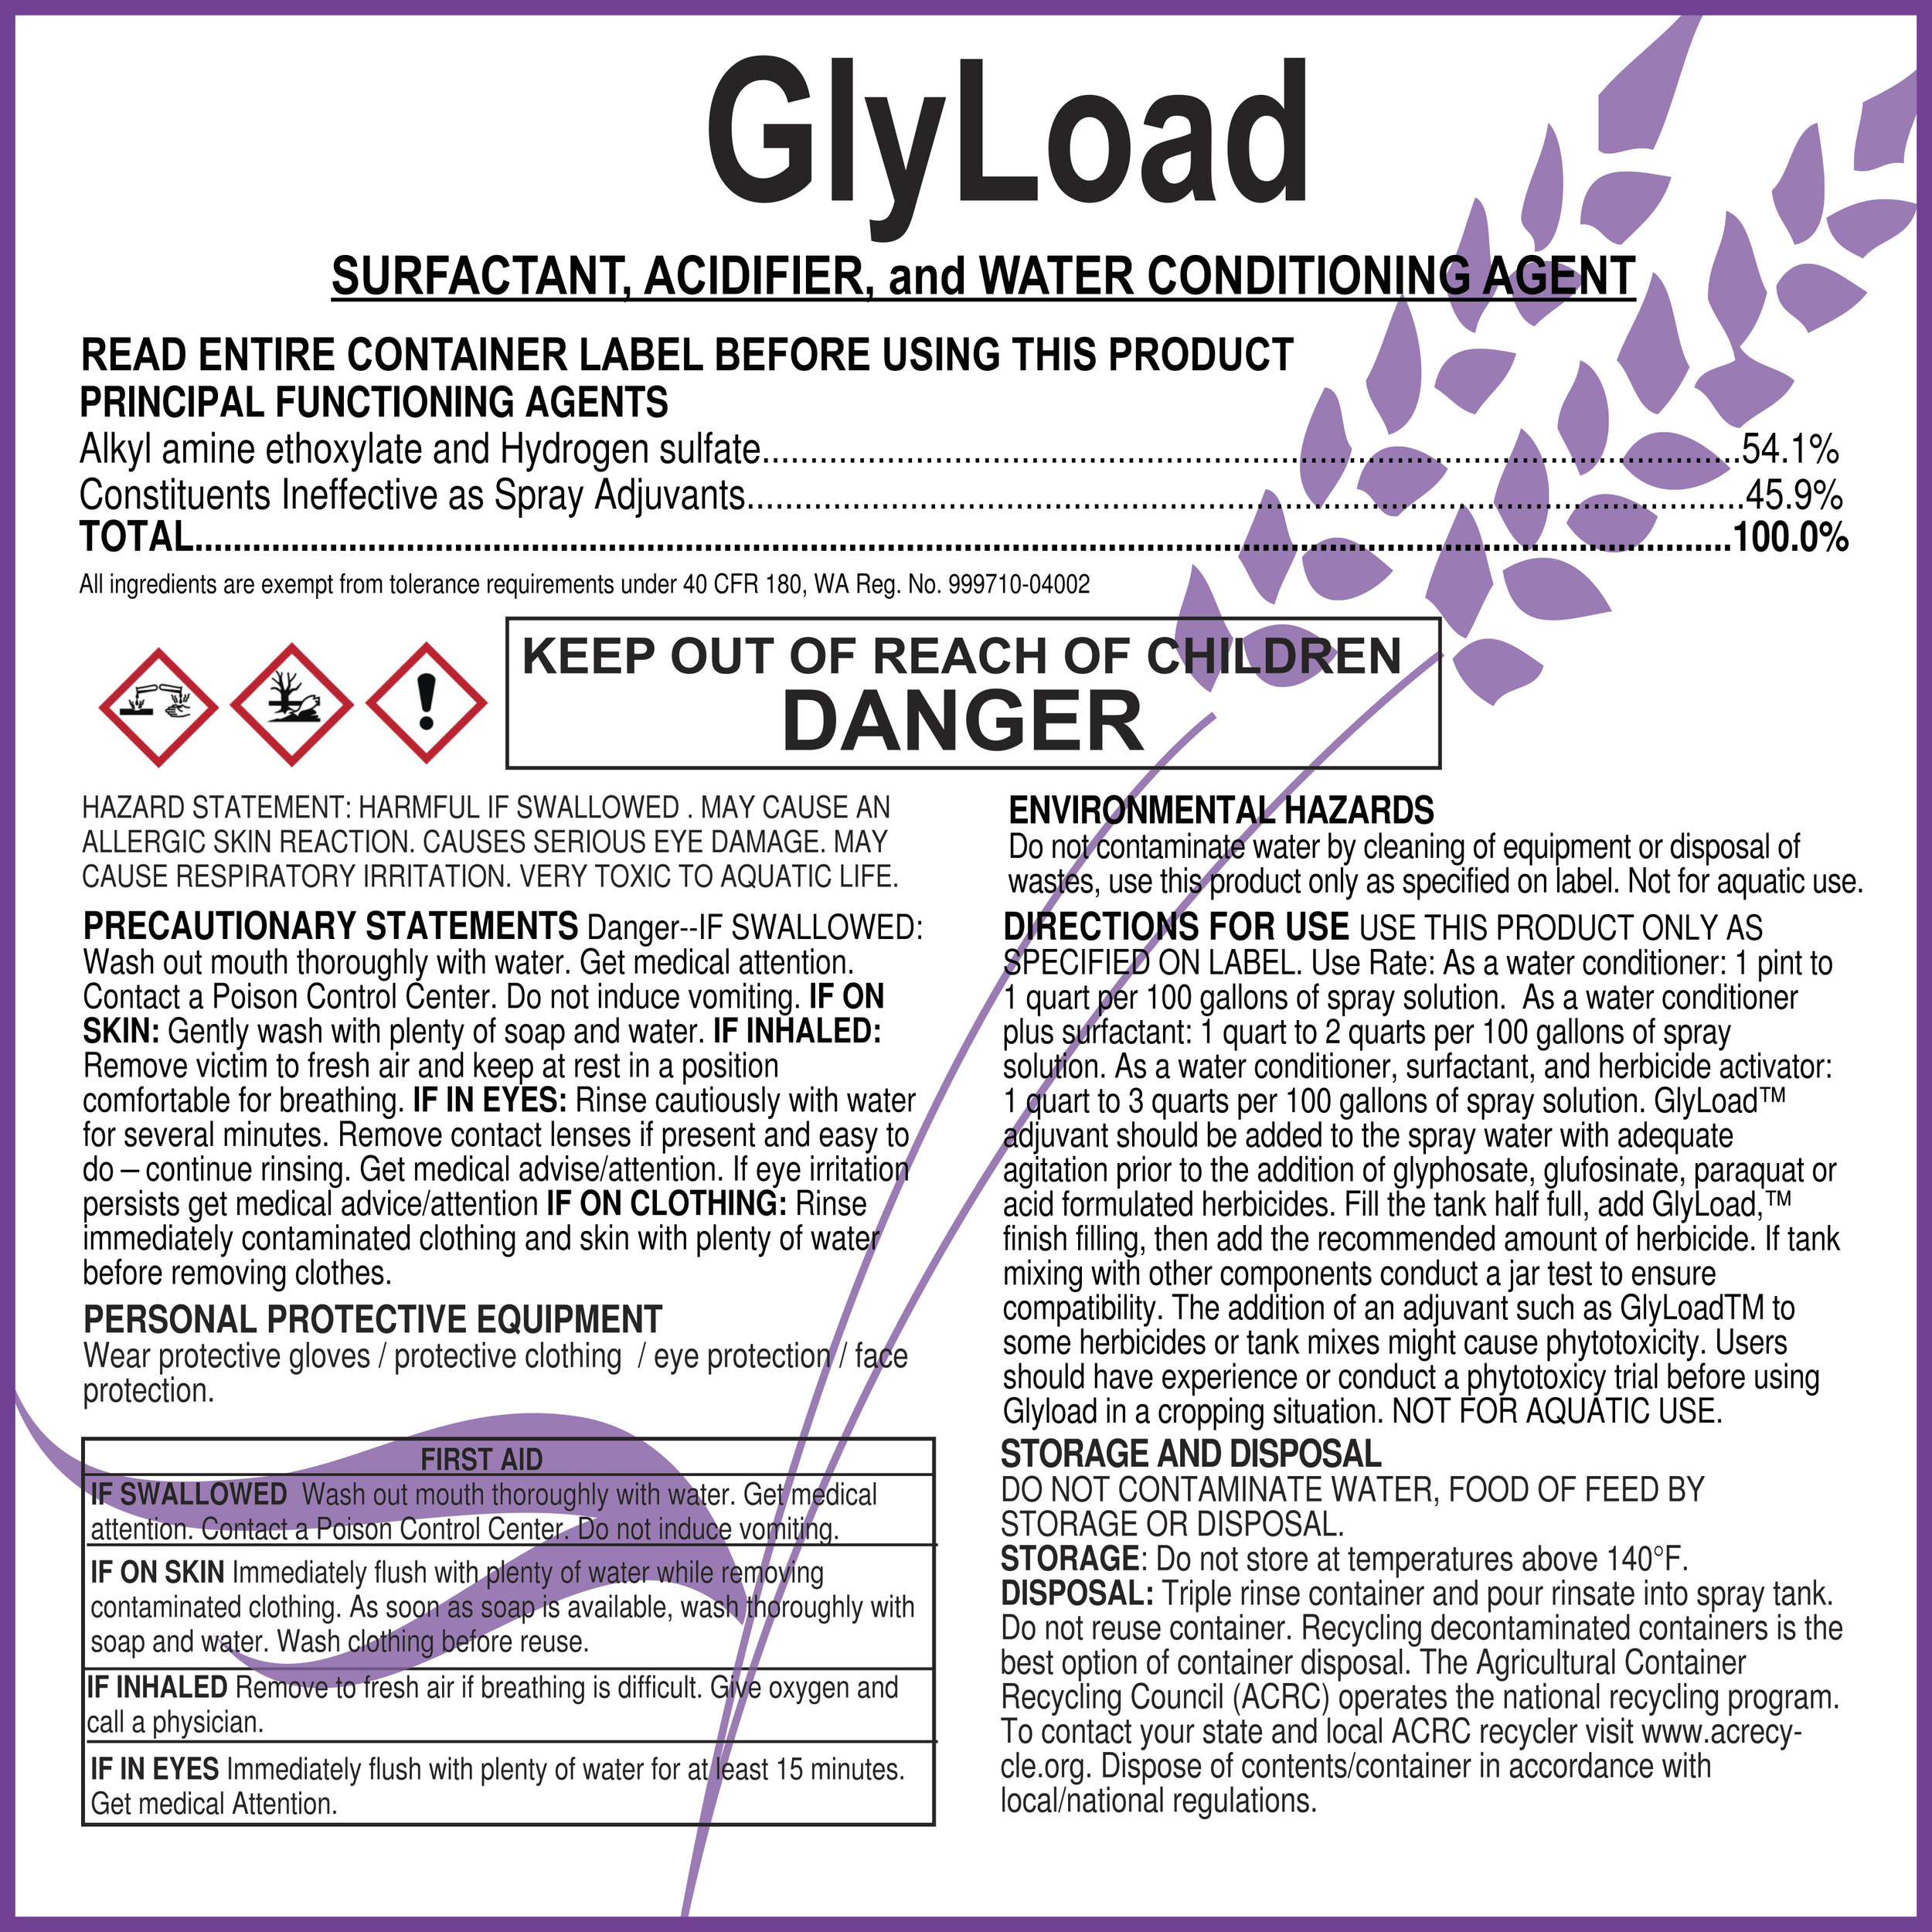 GlyLoad Label GHS 3-12-18 Outlined.jpg